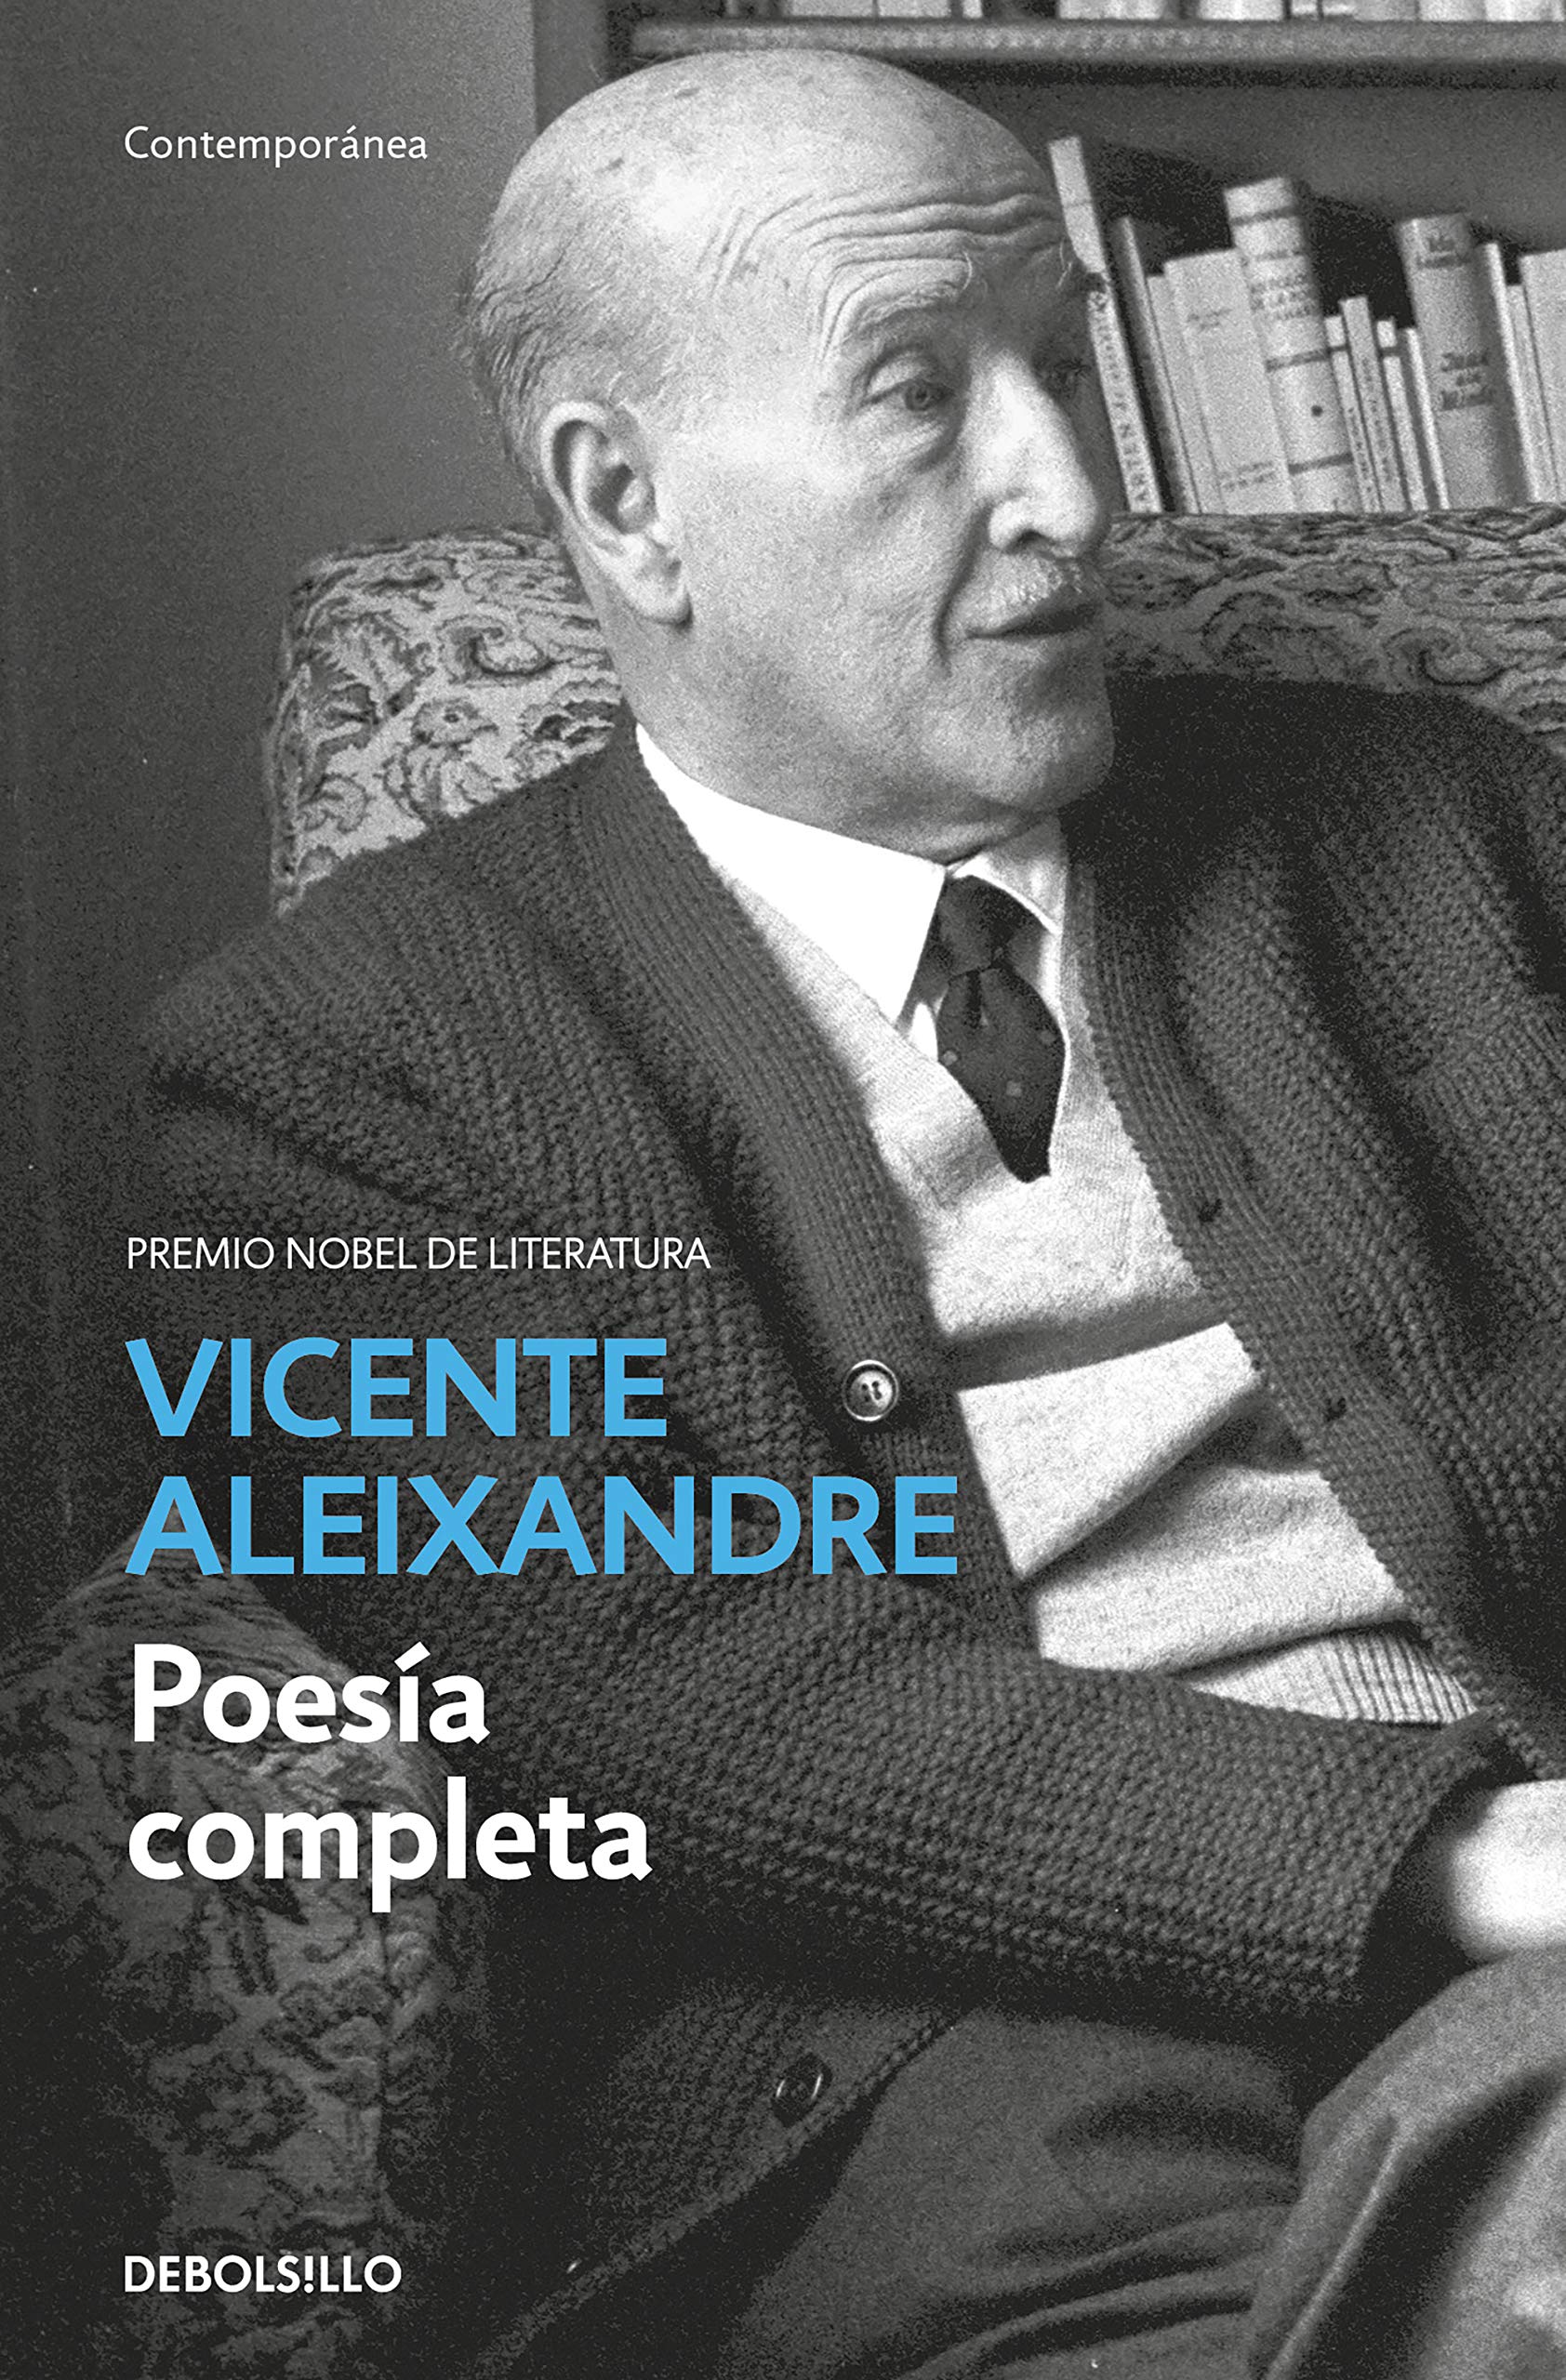 Zenda recomienda: Poesía completa, de Vicente Aleixandre